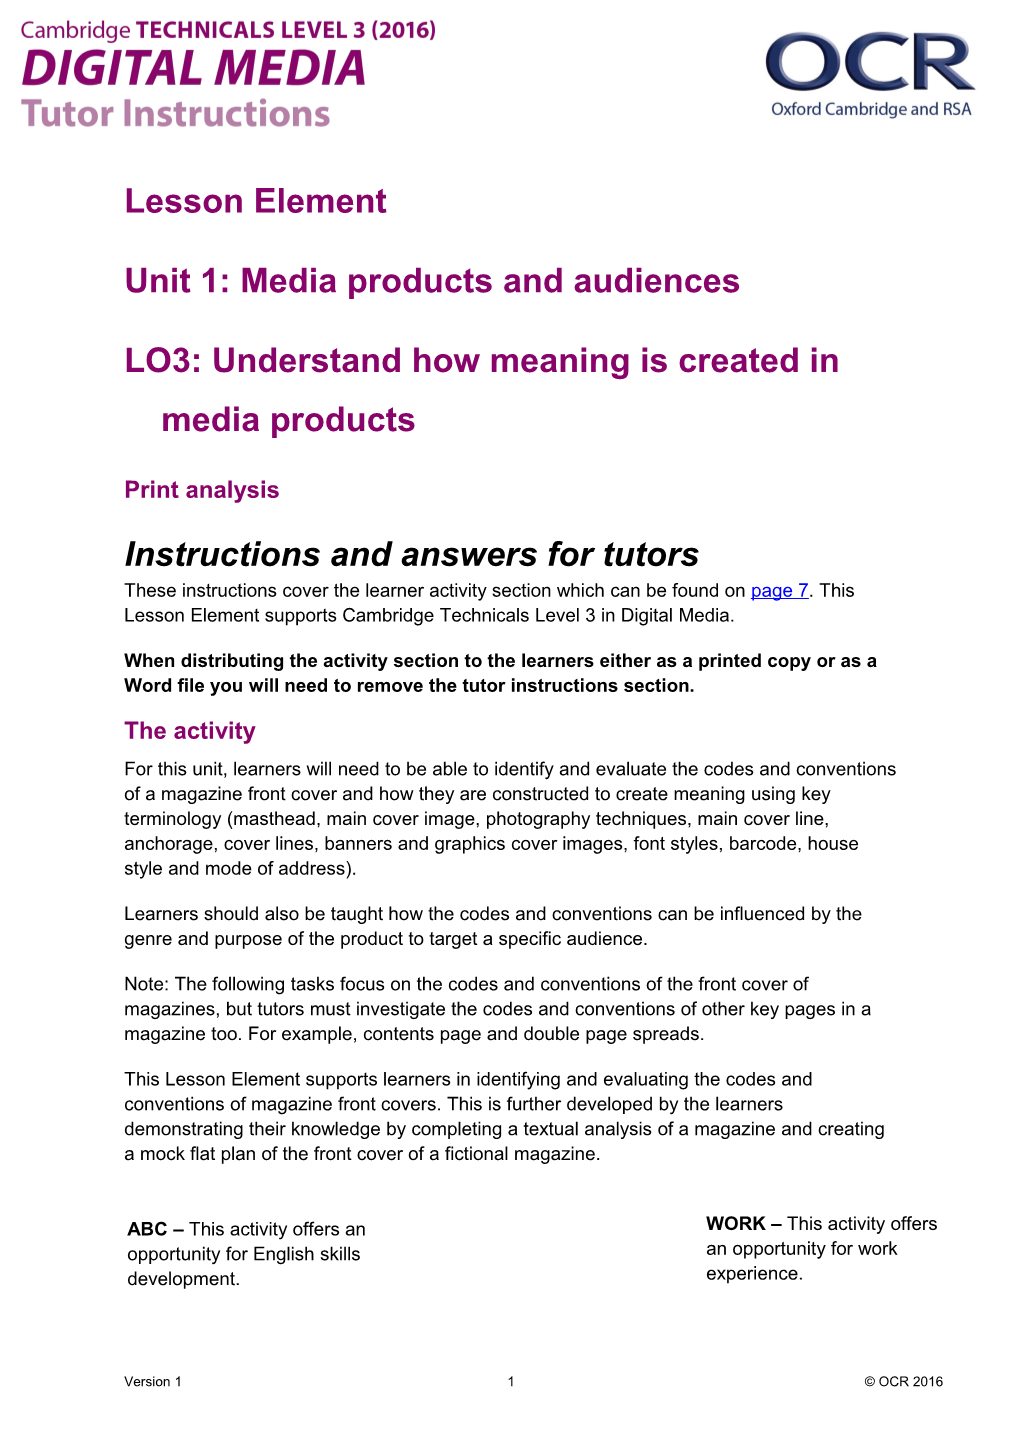 Cambridge Technicals Level 3 Digital Media Lesson Element 2